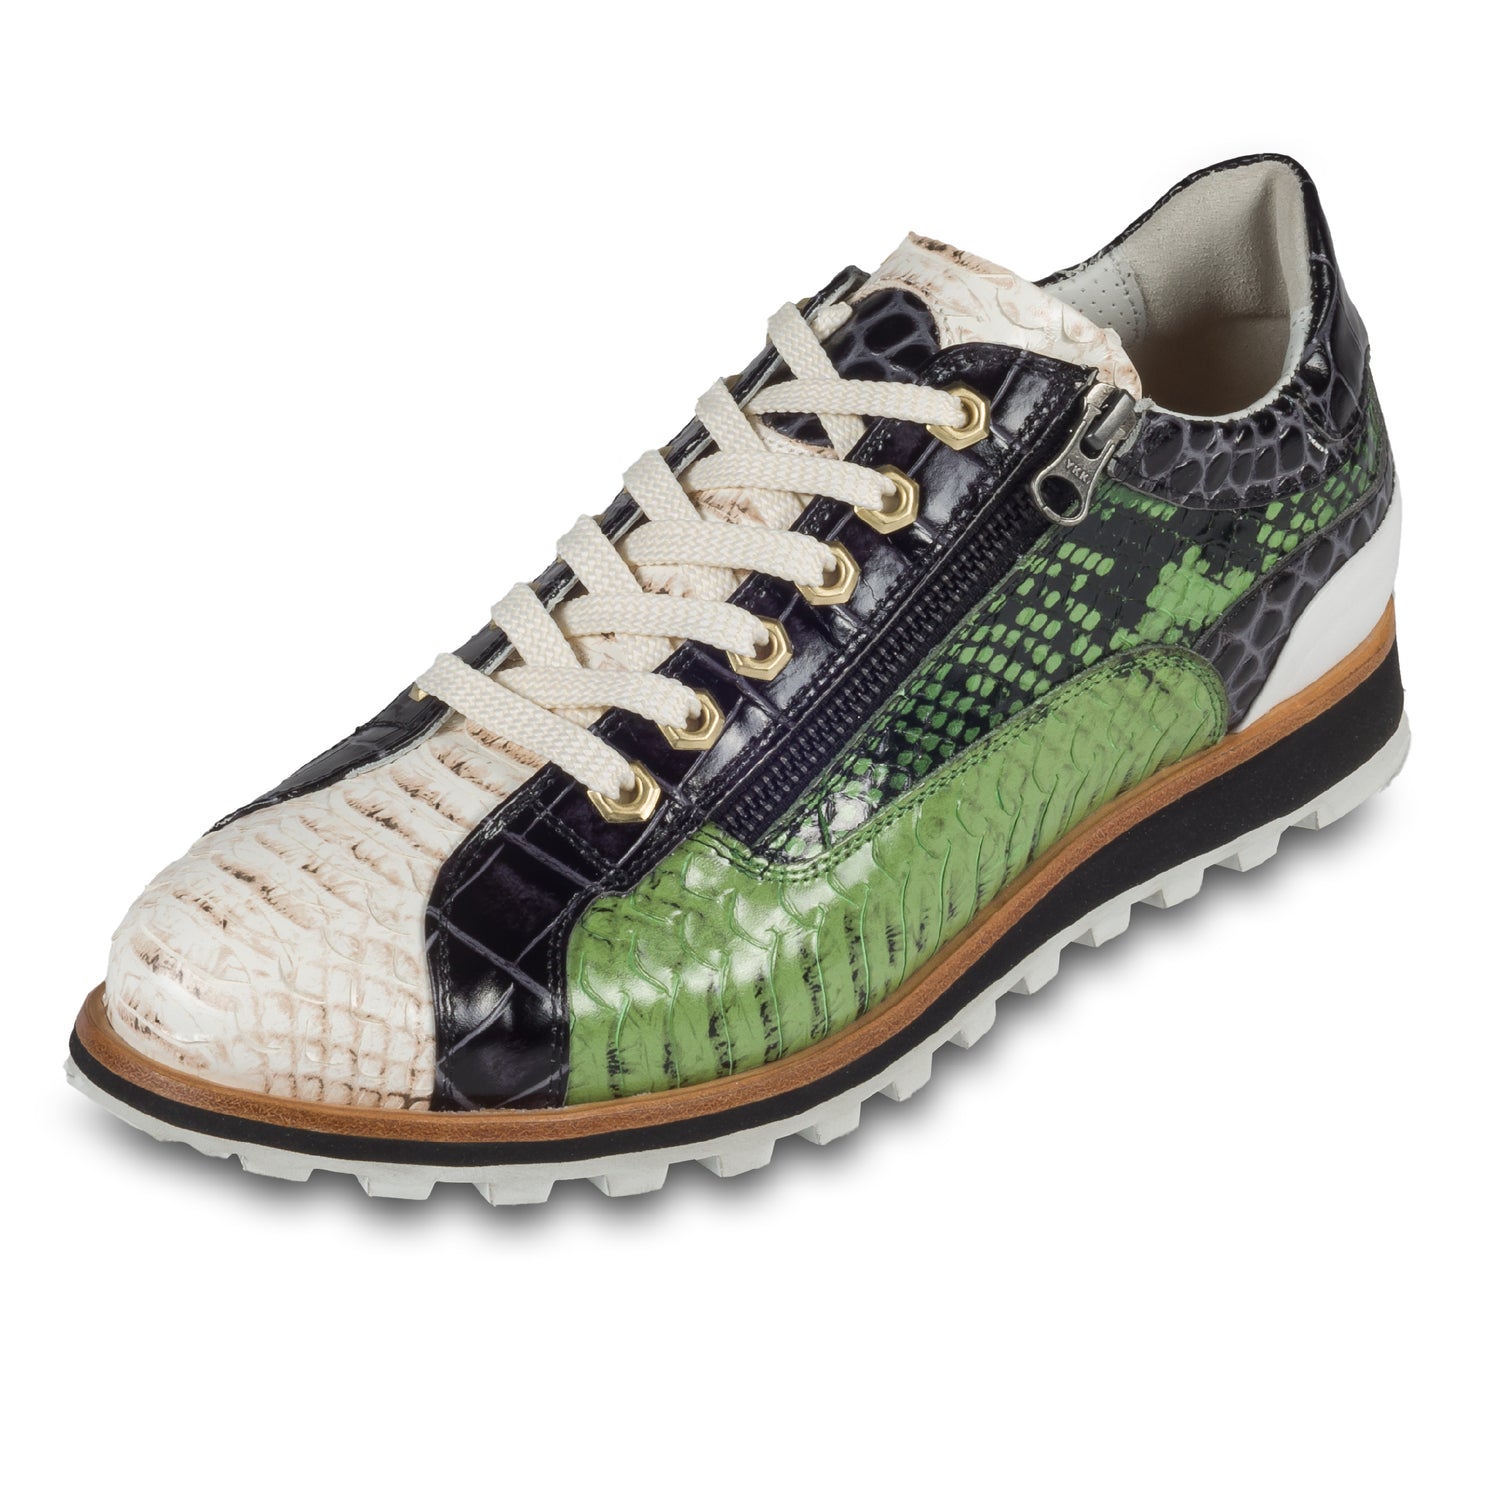 Lorenzi Herren Leder Sneaker in grün / creme / schwarzer Schlangen-Optik und seitlichem Reißverschluß. Handgefertigt in Italien. Schräge Ansicht linker Schuh.